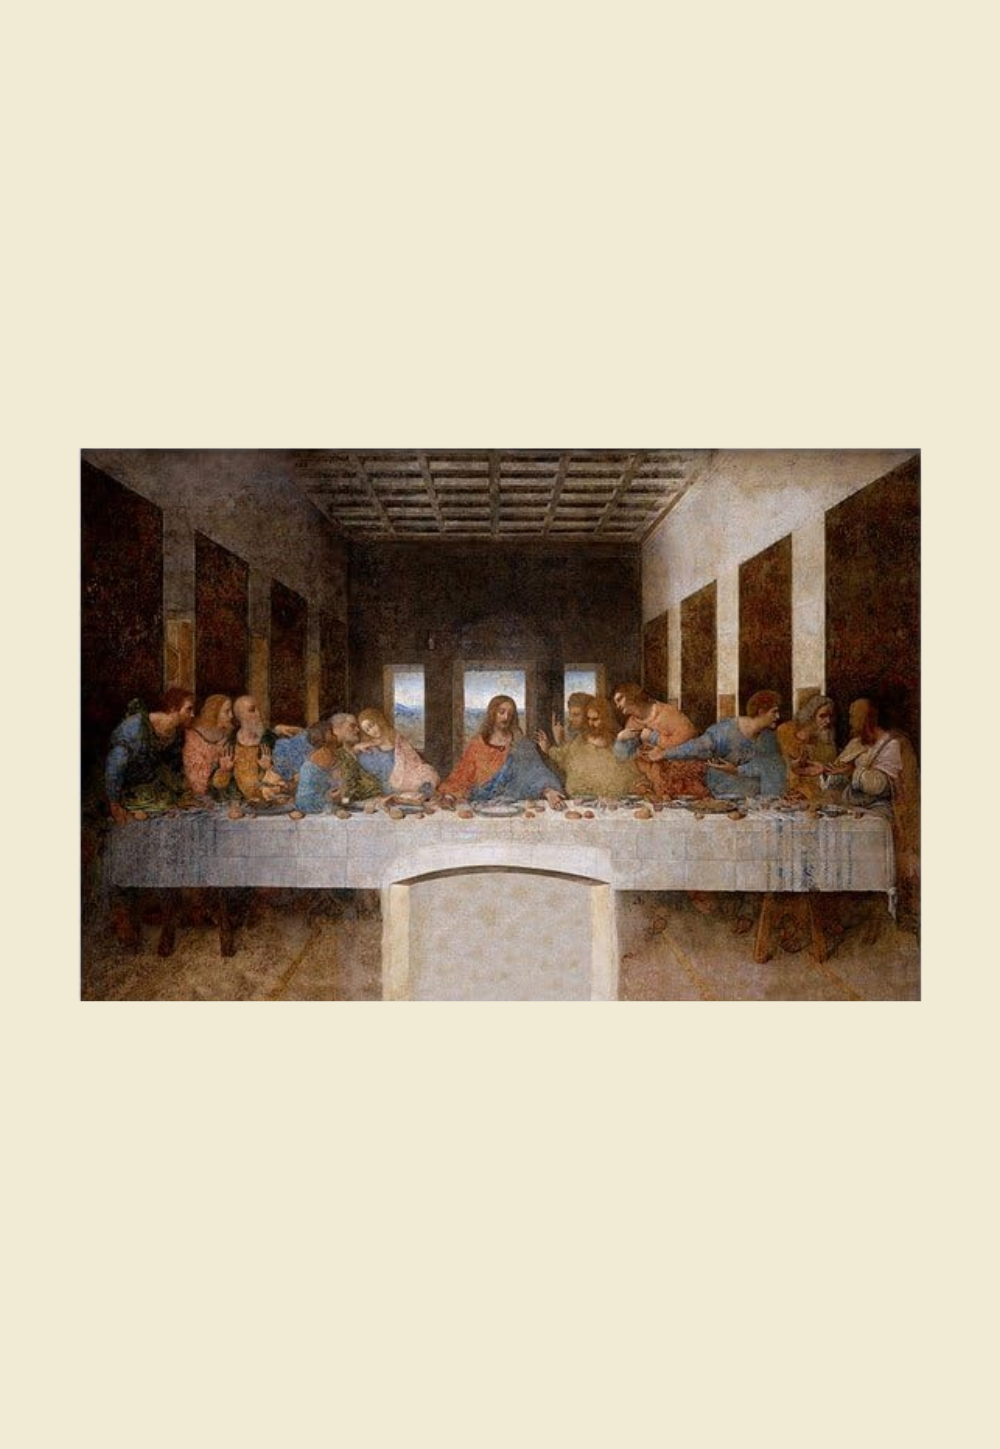 The Last Supper Art by Leonardo Da Vinci